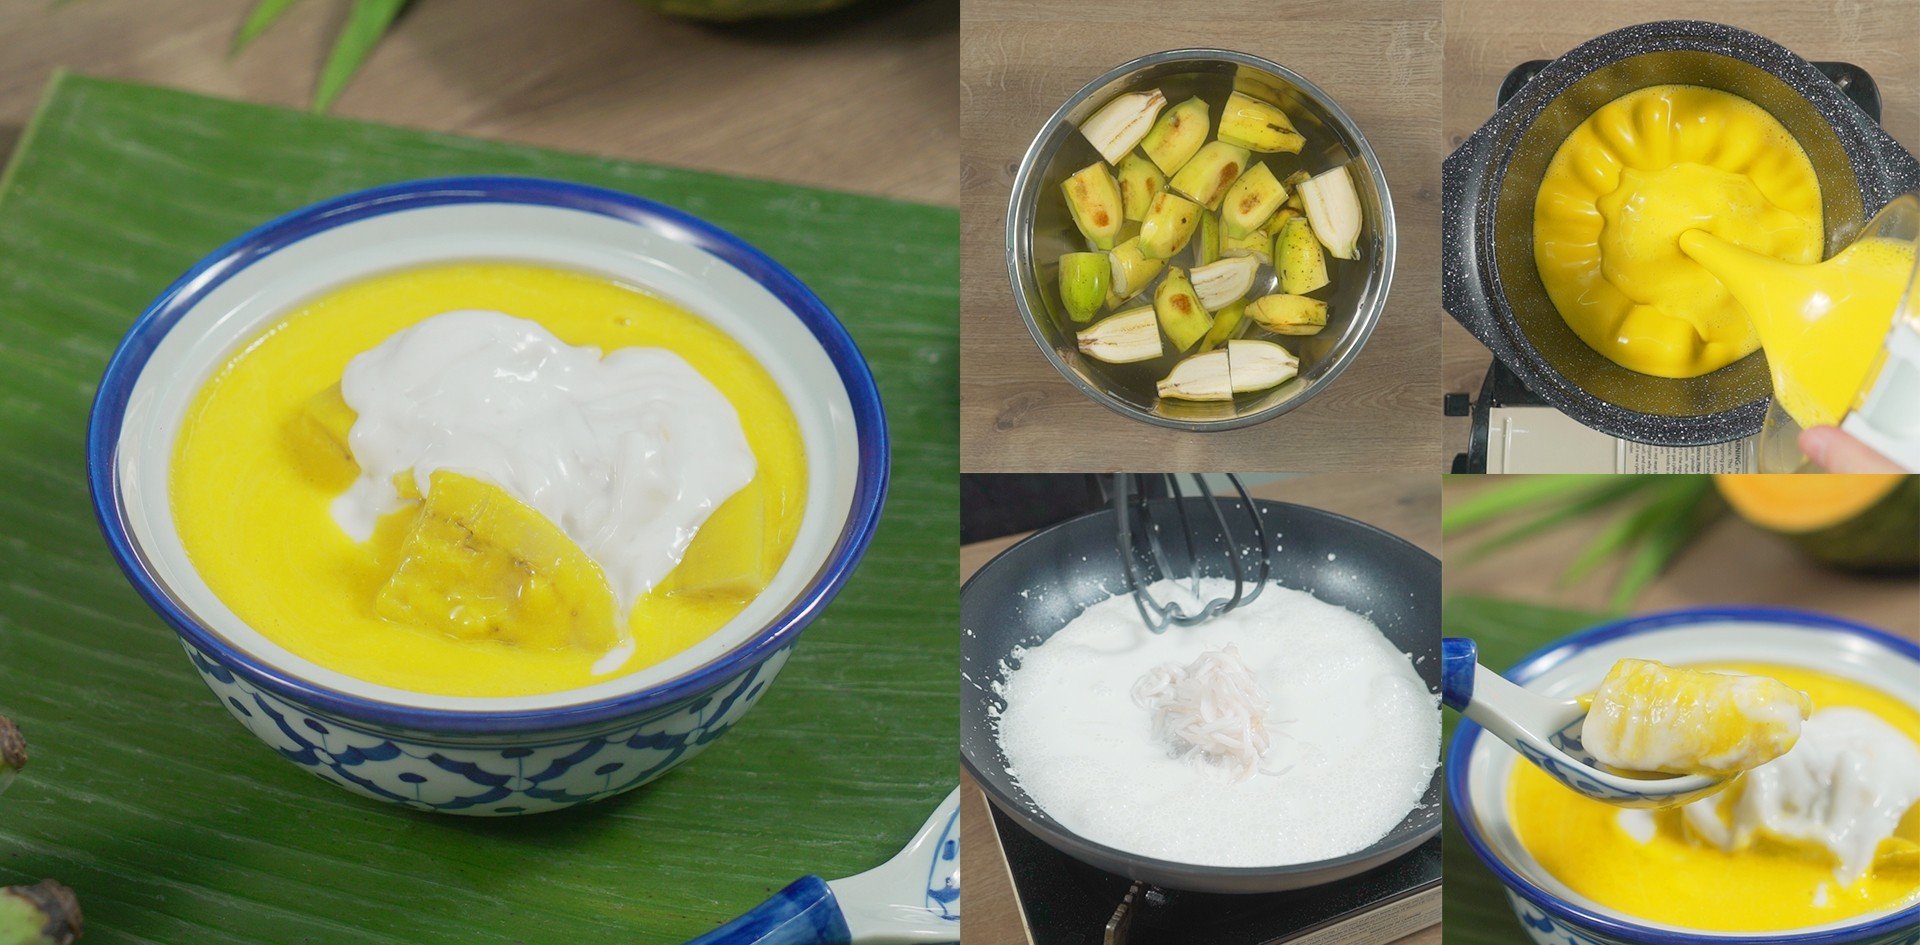 วิธีทำ “กล้วยบวชพระ” เมนูของหวานสุดแหวกแนว อร่อยจนต้องกราบ เมนูอาหารว่าง